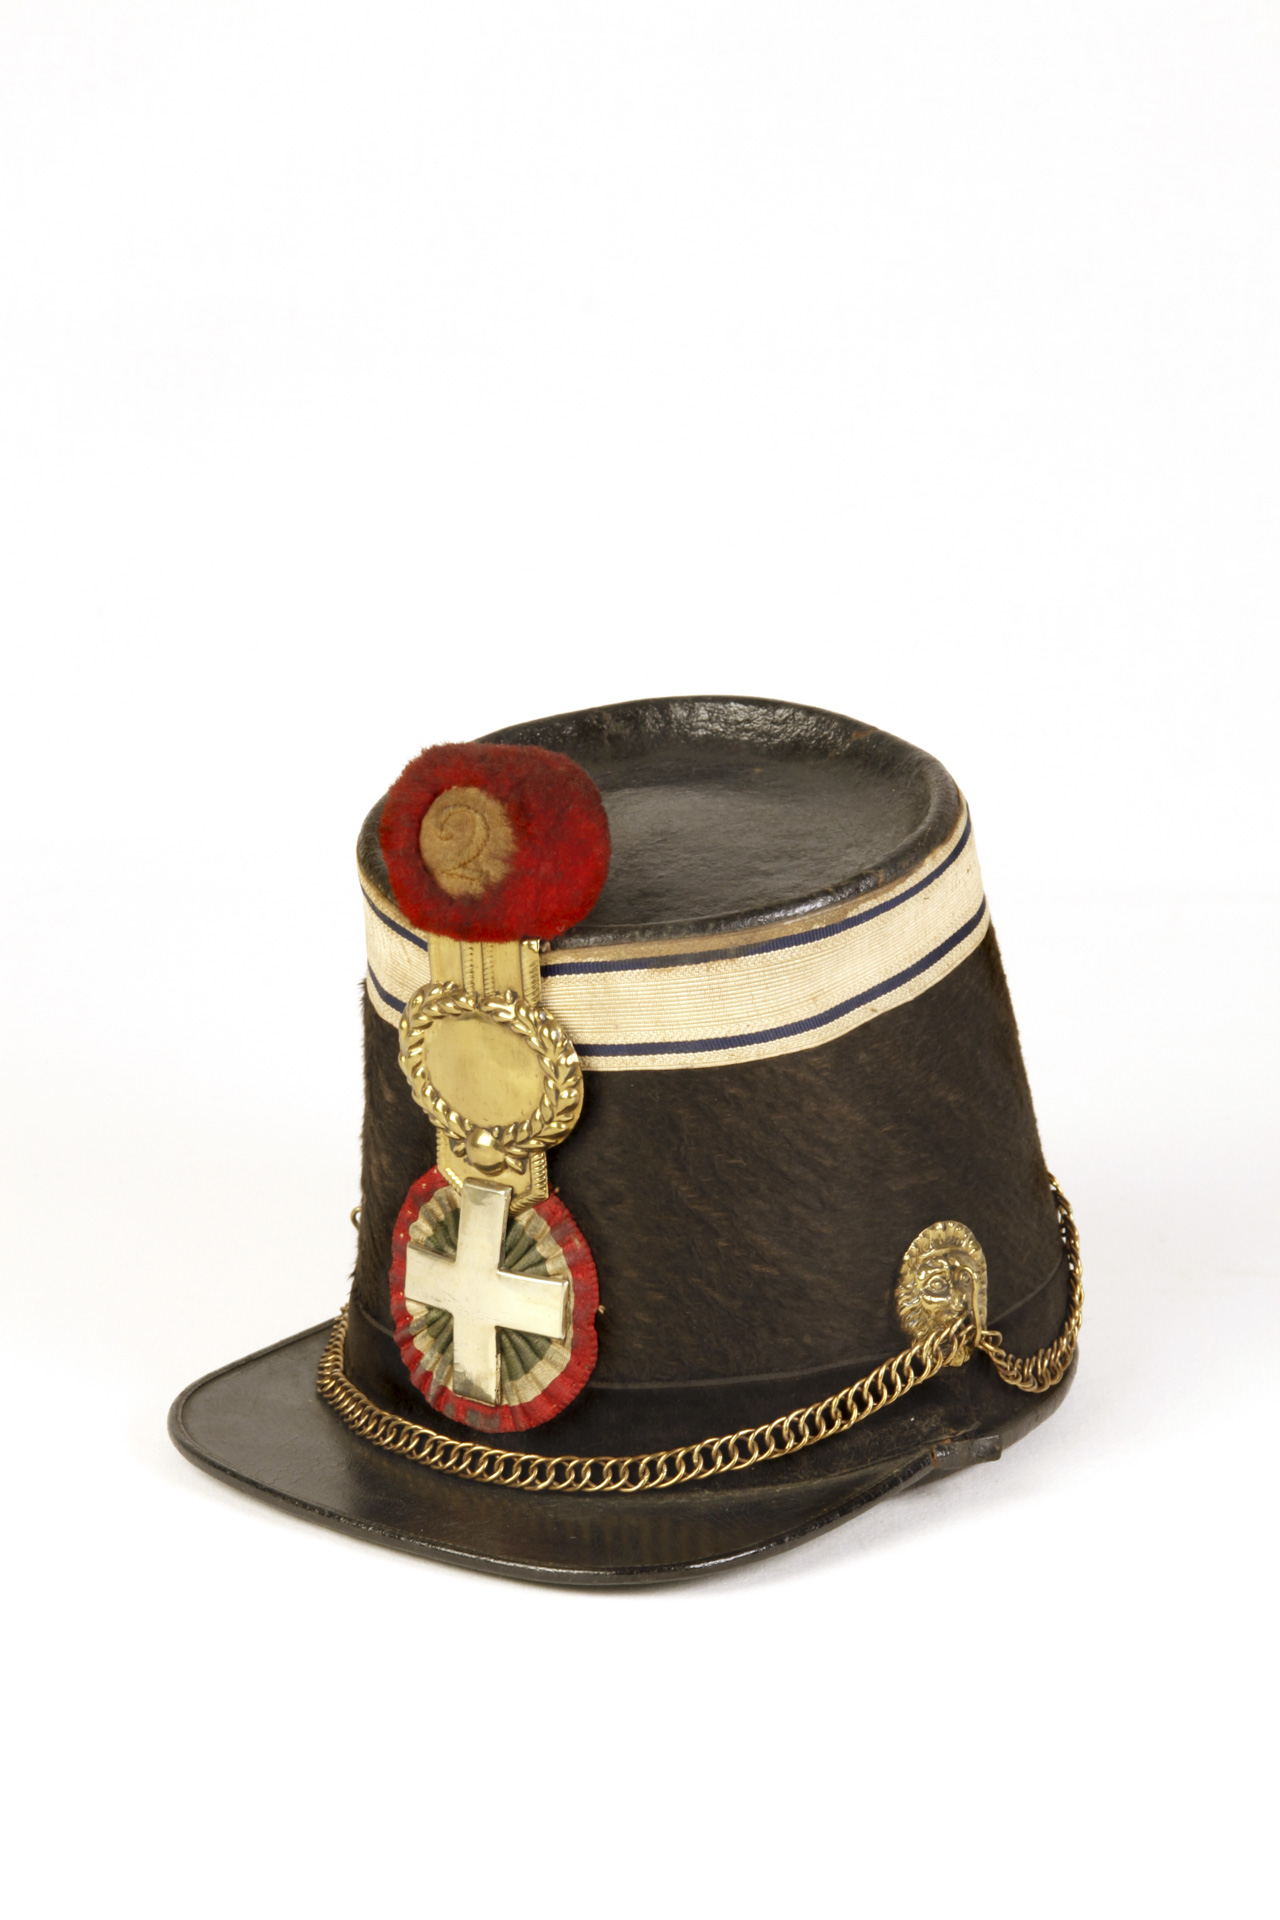 cappello soldato esercito piemontese del risorgimento fotografia per inventari museali